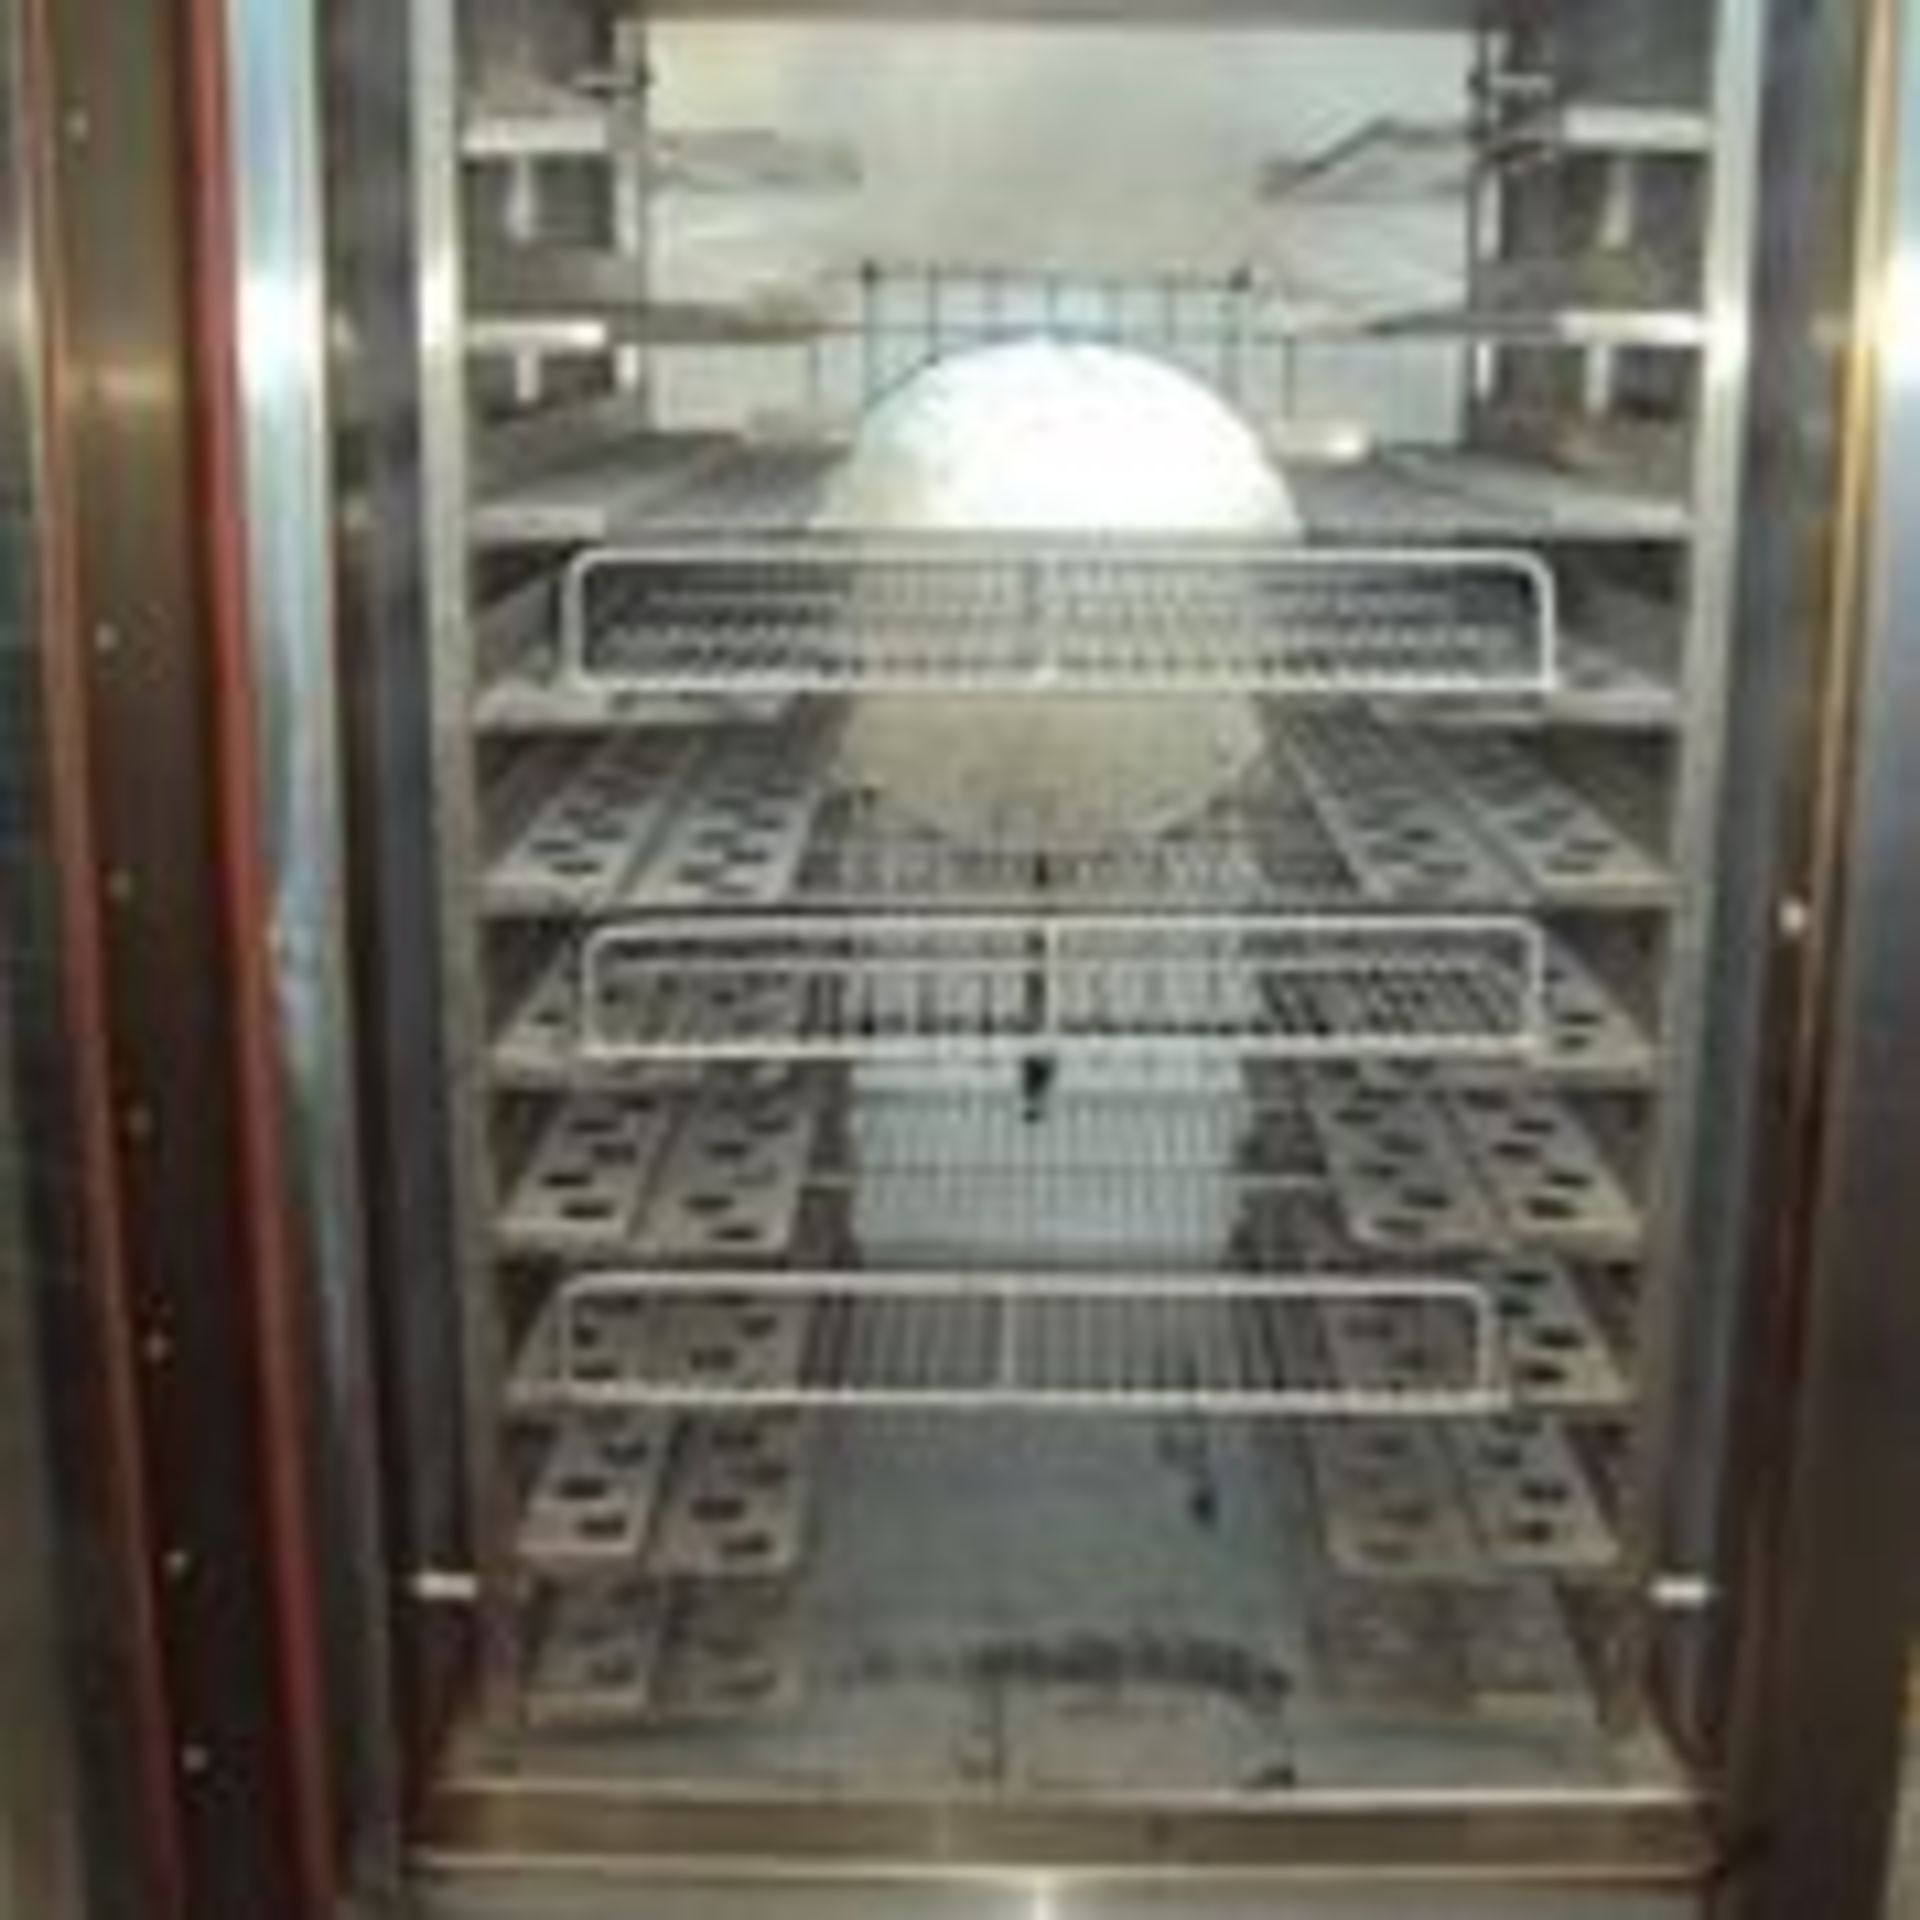 New Tedesco Covection oven, Model: FTT 300 NEW, Serial: 24638, Energy: 110V, 60Hz, 1ph, Material: - Image 5 of 7